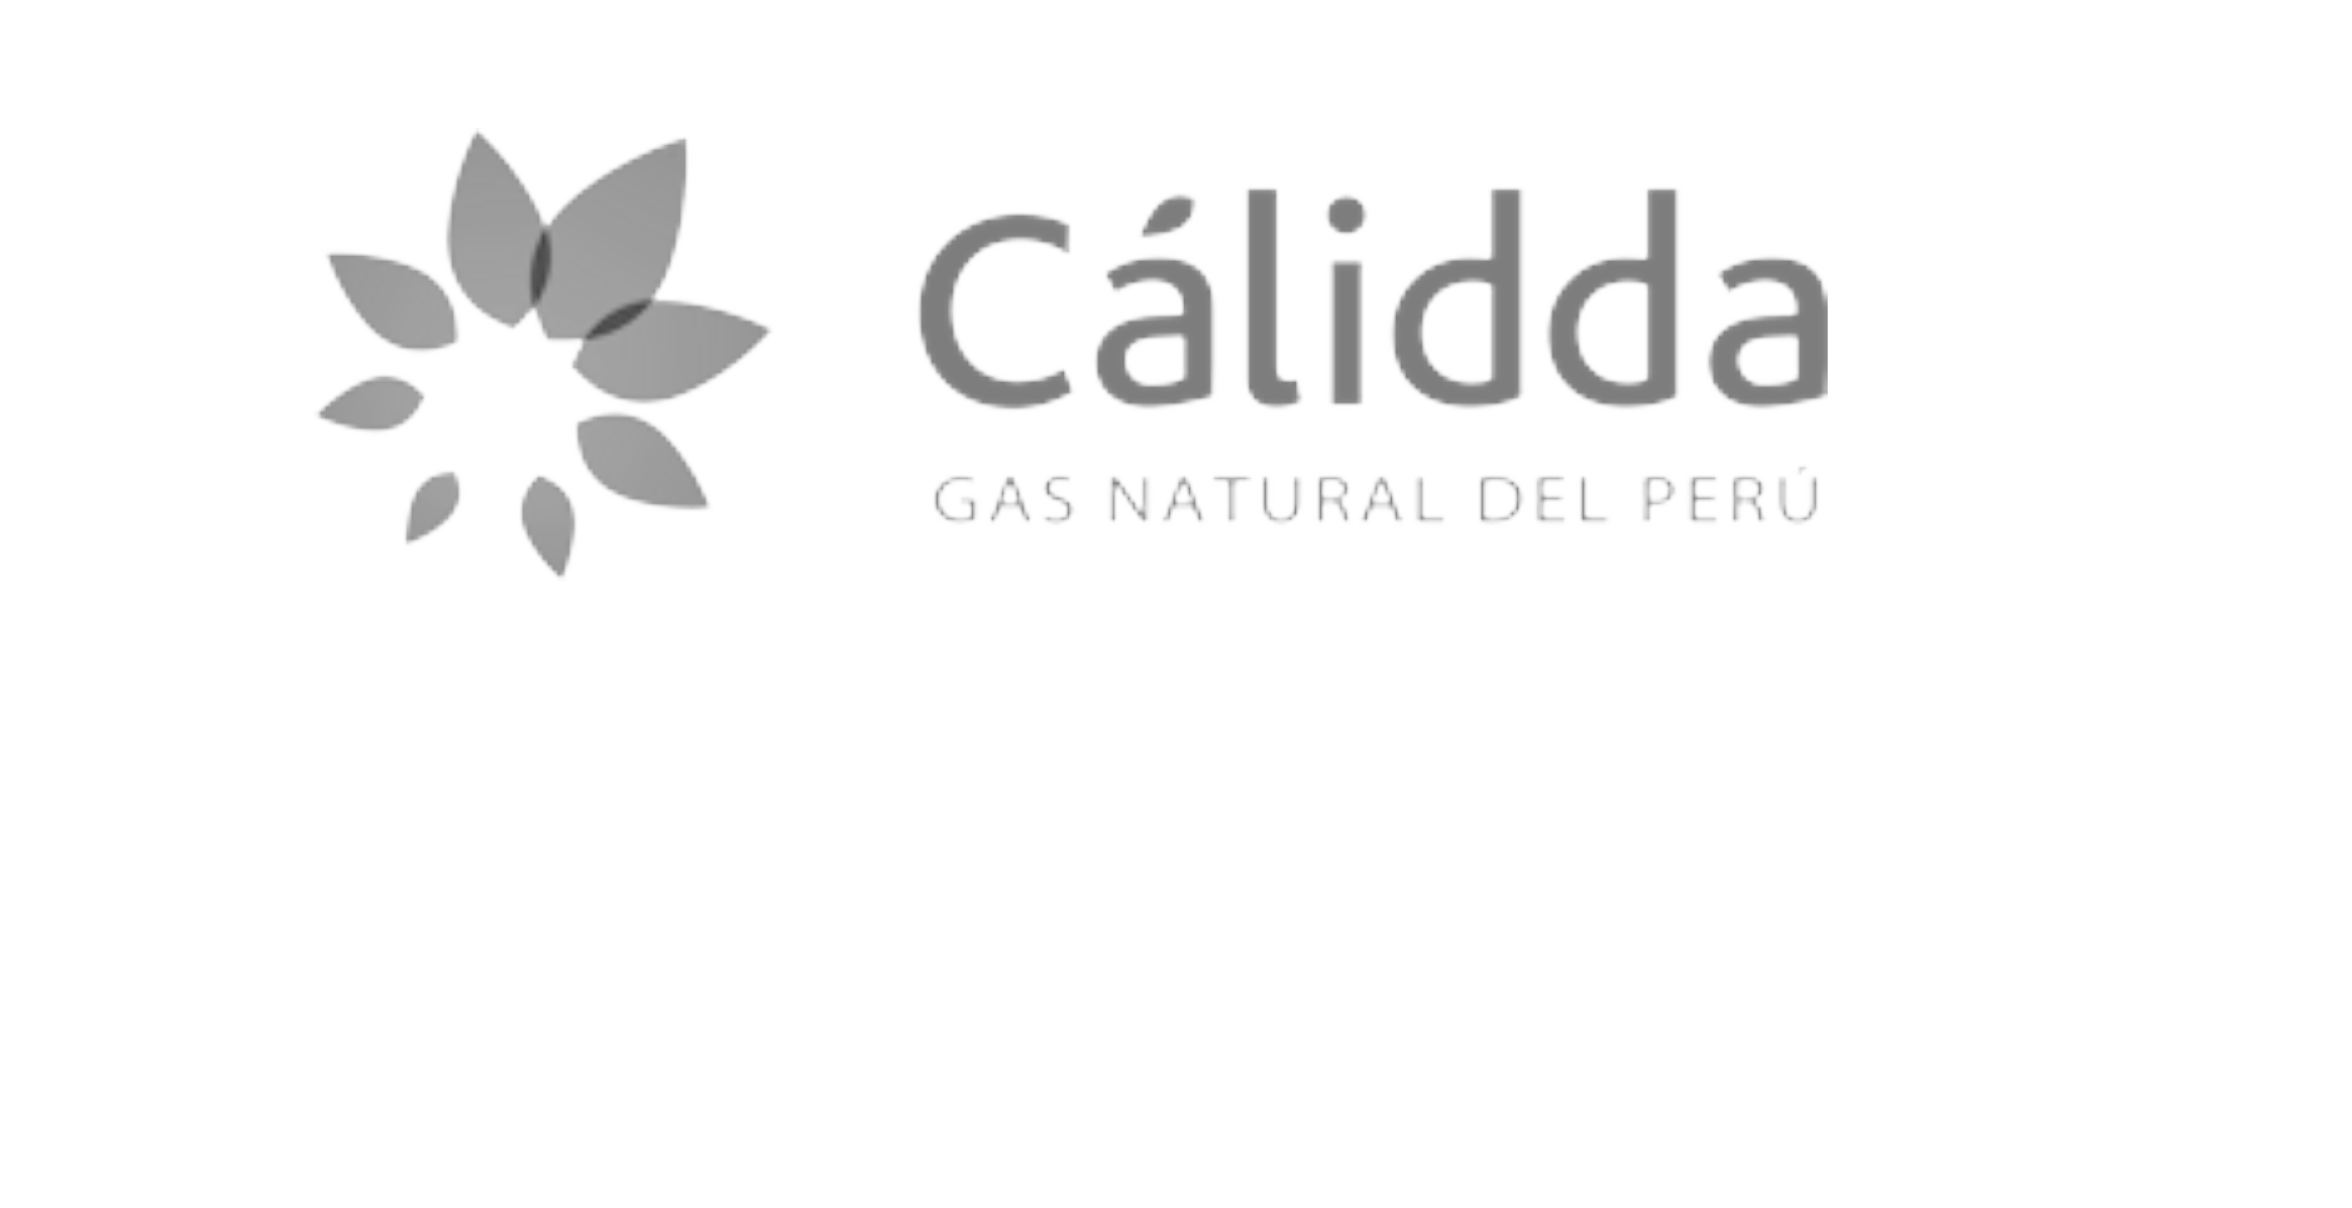 Calidda